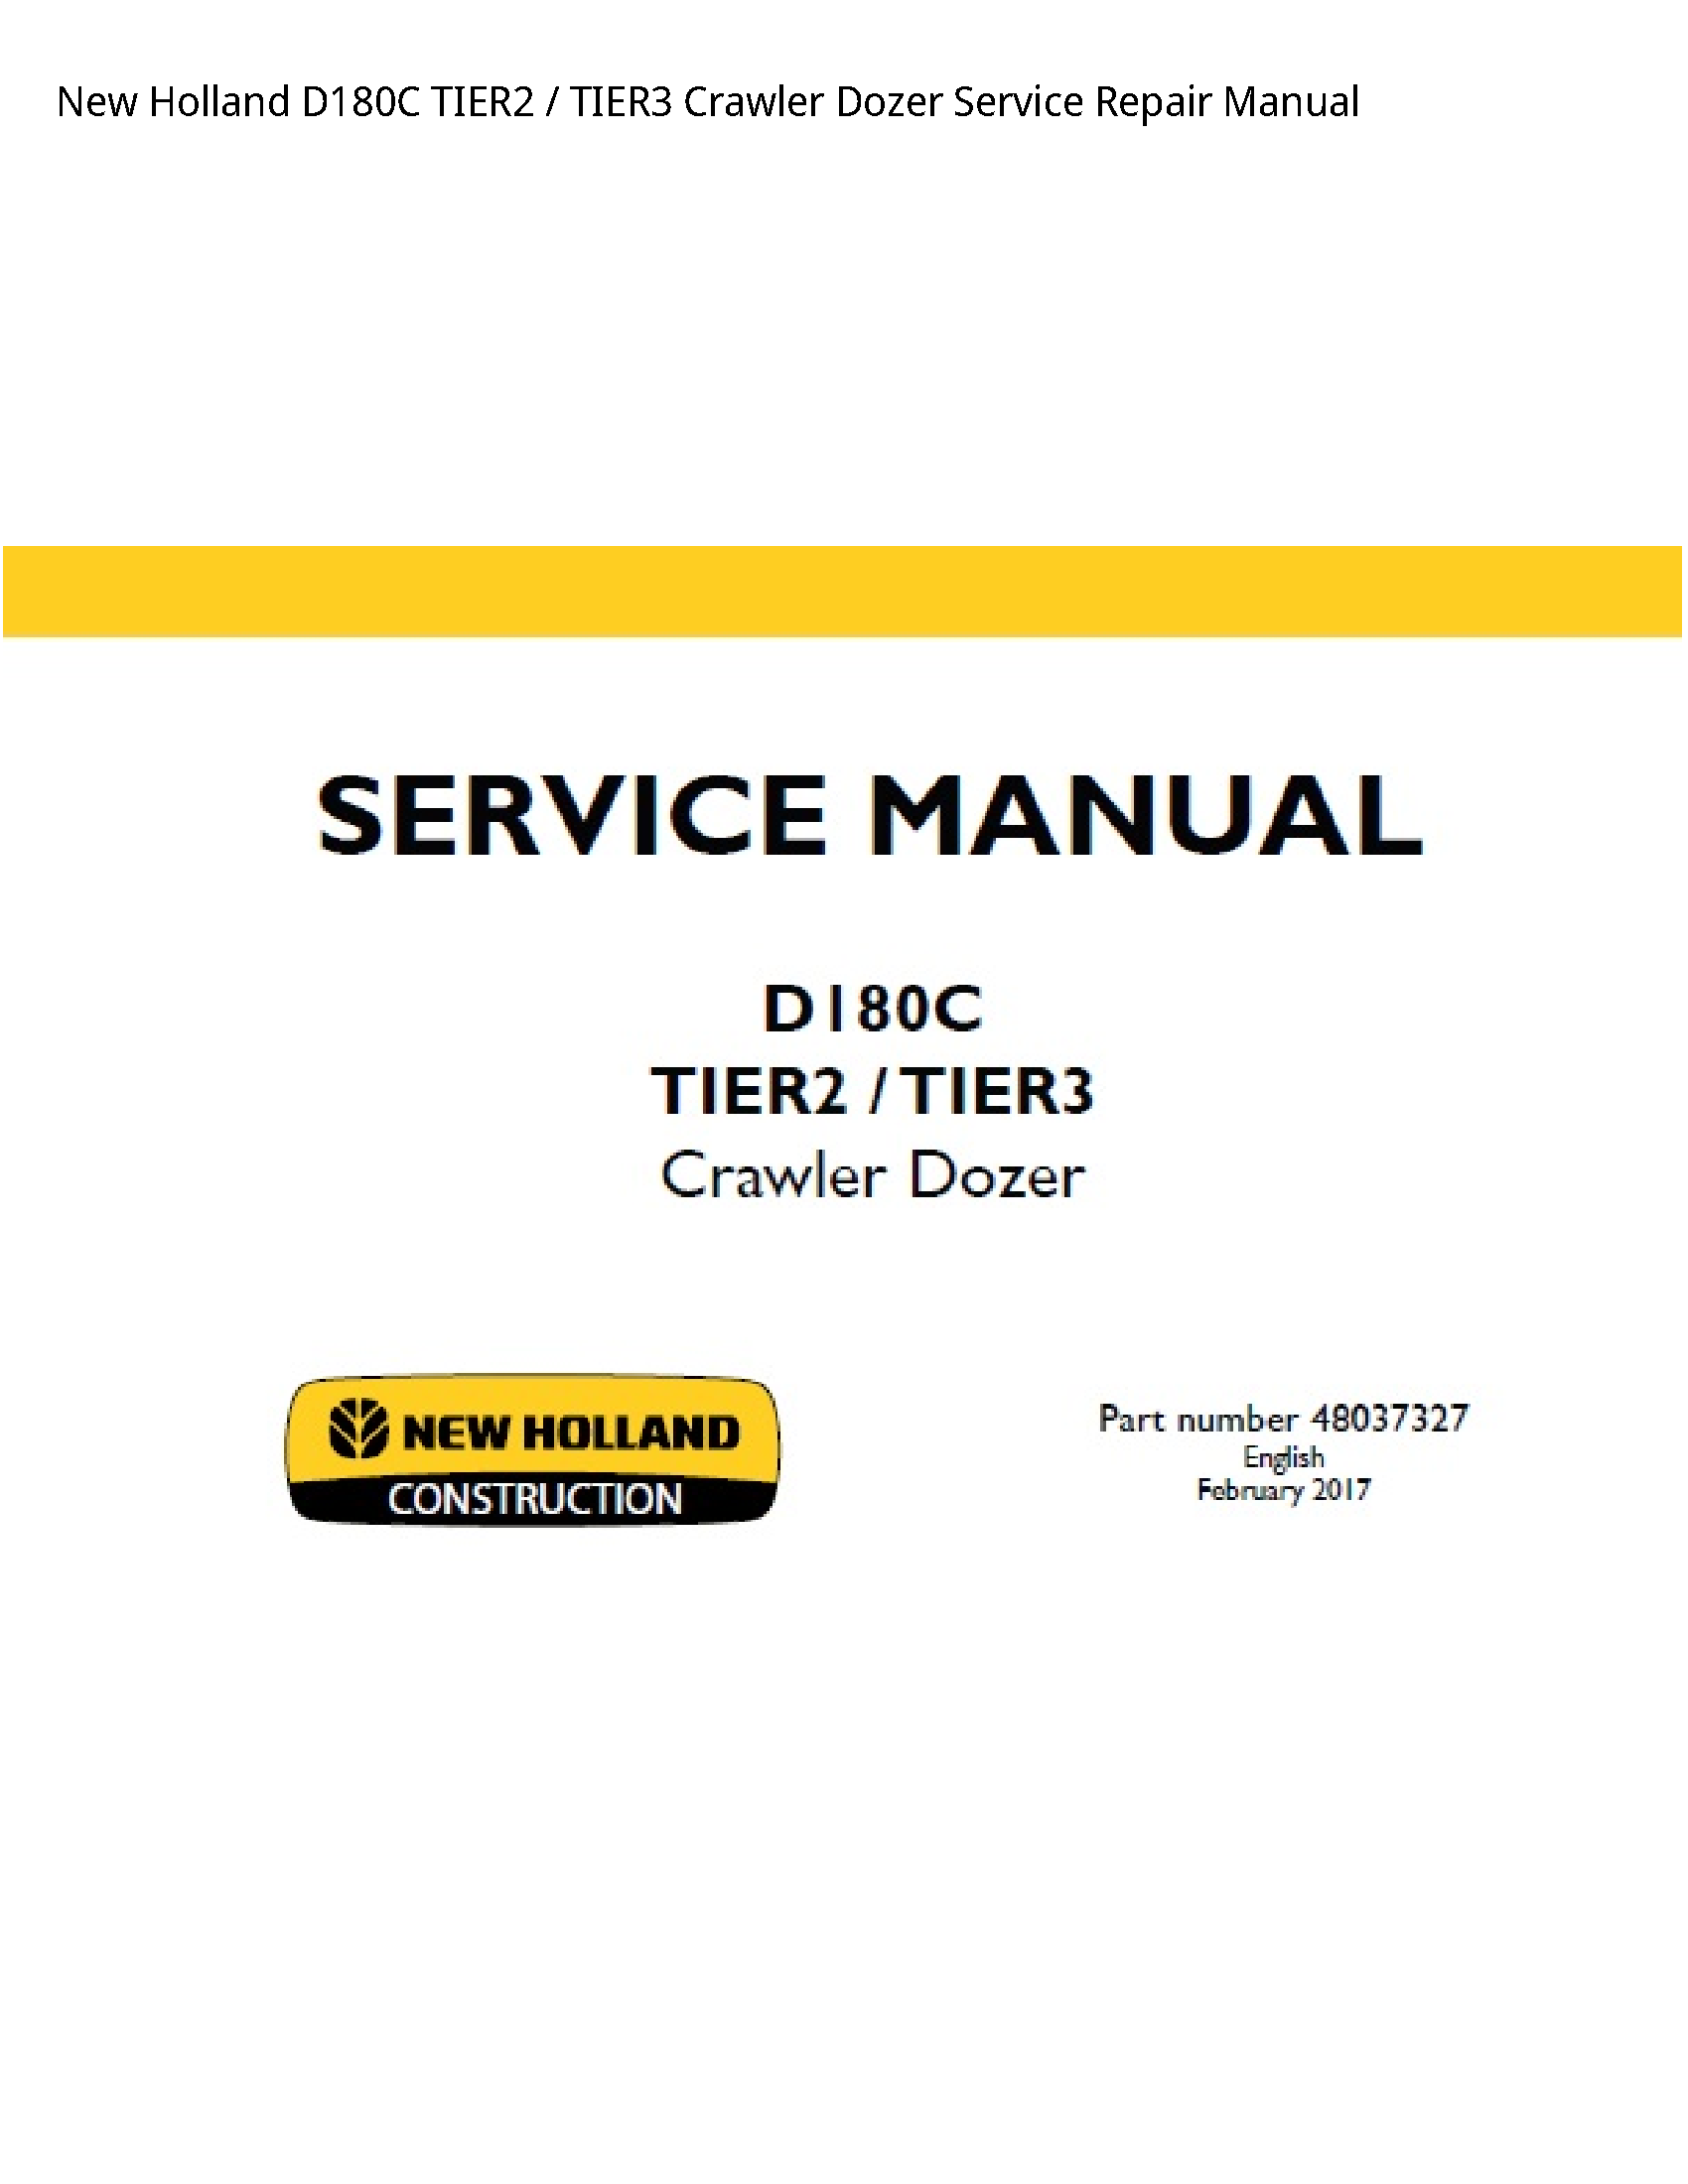 New Holland D180C Crawler Dozer manual